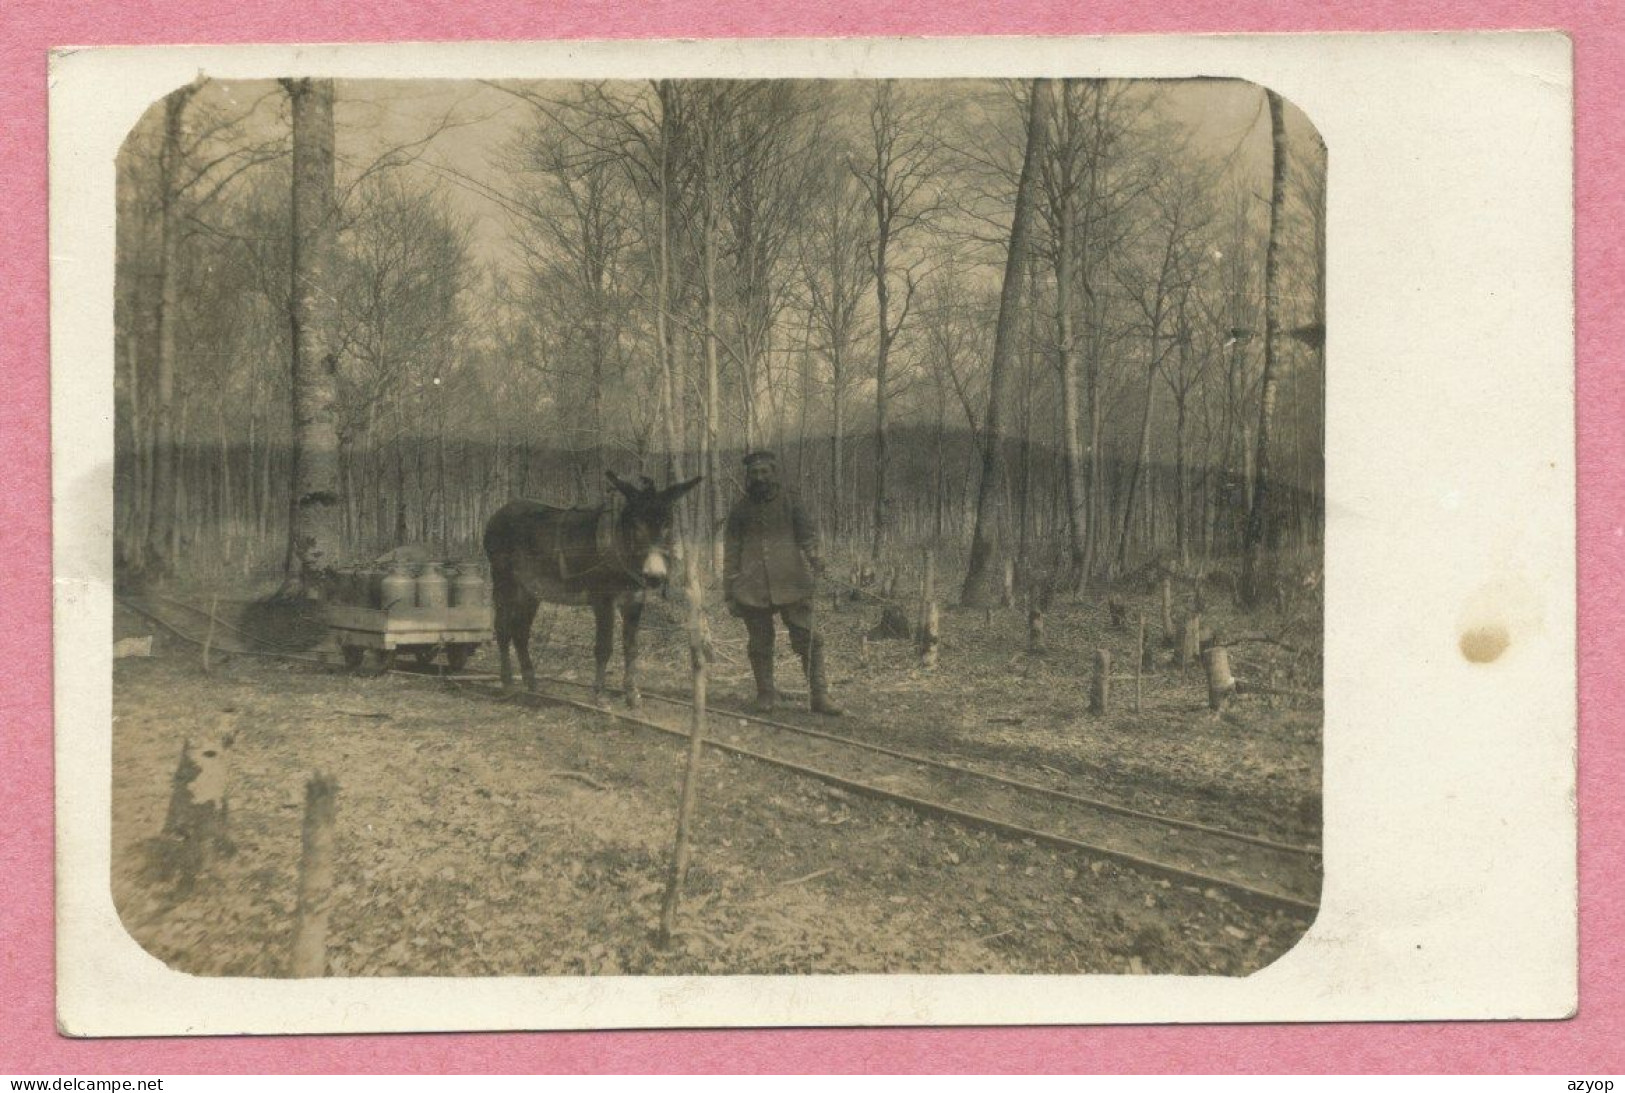 ELSASS - LOTHRINGEN - Carte Photo - Feldbahn - Wagonet Tiré Par Un Ane - Esel - Ravitaillemant - Guerre 14/18 - 3 Scans - War 1914-18